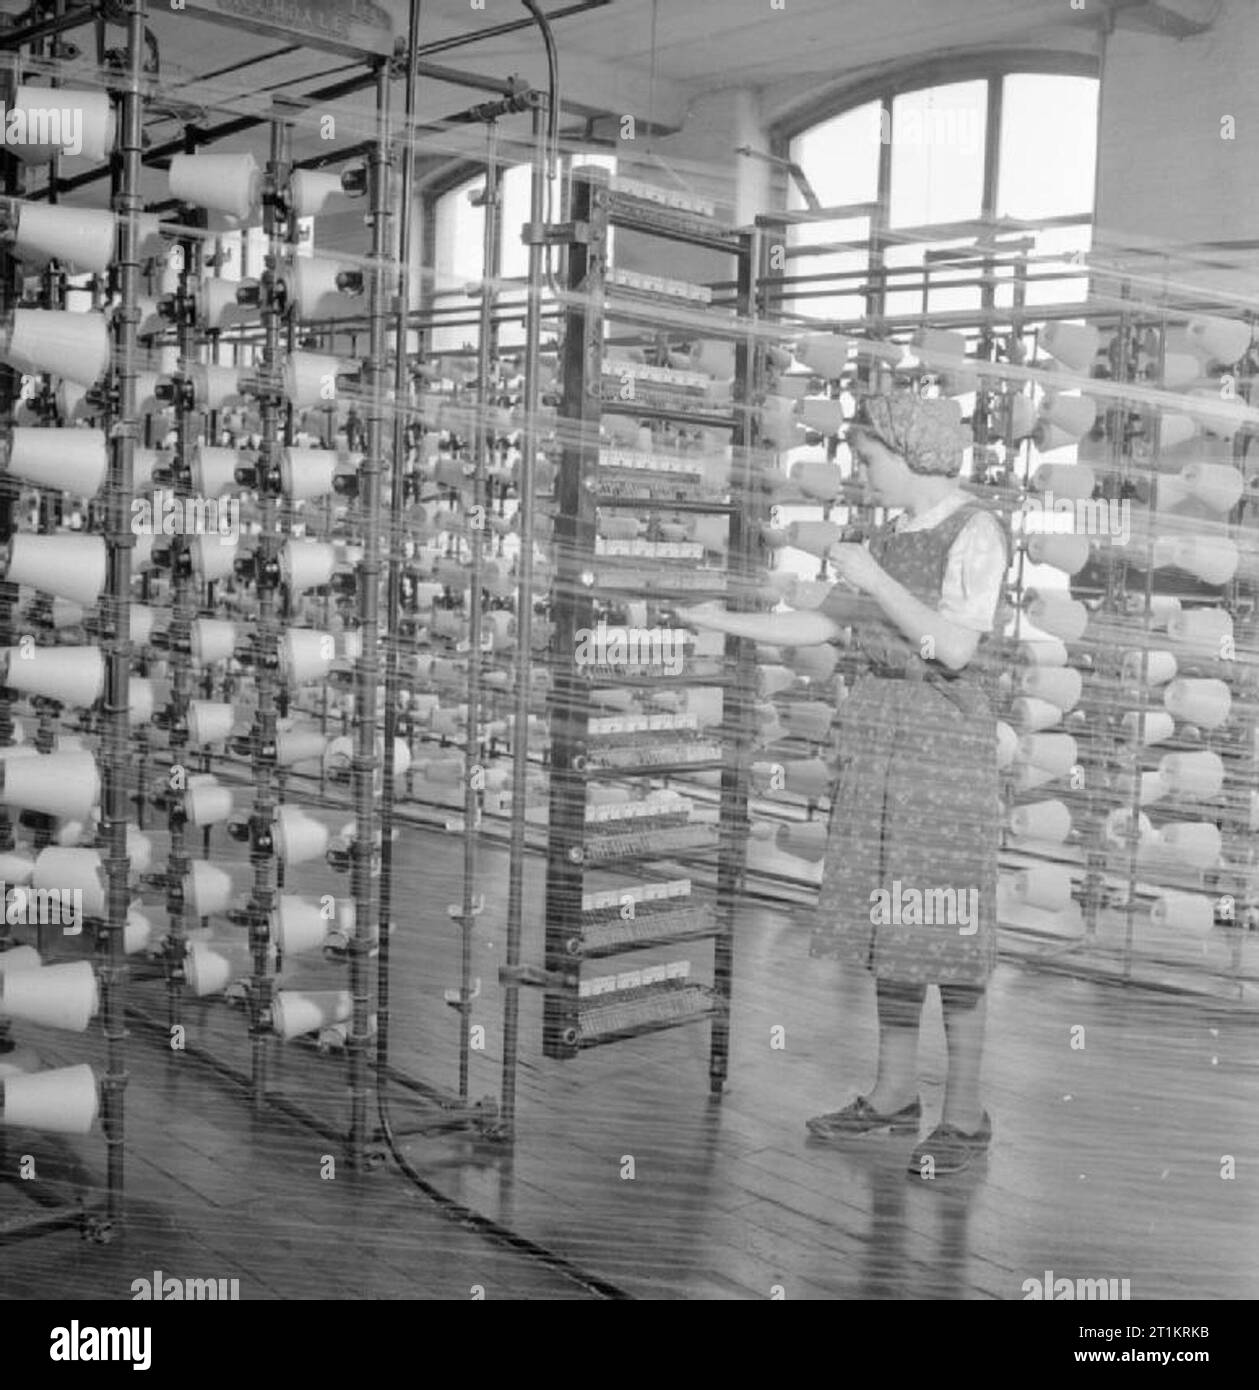 Der britischen Baumwollindustrie - Alltag an einer britischen Cotton Mill, Lancashire, England, Großbritannien, 1945 Hilda Mackenzie arbeitet als Ball warper in einer Baumwollspinnerei, irgendwo in Lancashire. Ihr Job ist die feinen Fäden auf einer kreisförmigen Holzbalken zu wickeln. Dieses Foto wird genommen durch die feinen Web von Threads. Zeilen und Zeilen der Rollen der Thread ist deutlich zu sehen. Stockfoto